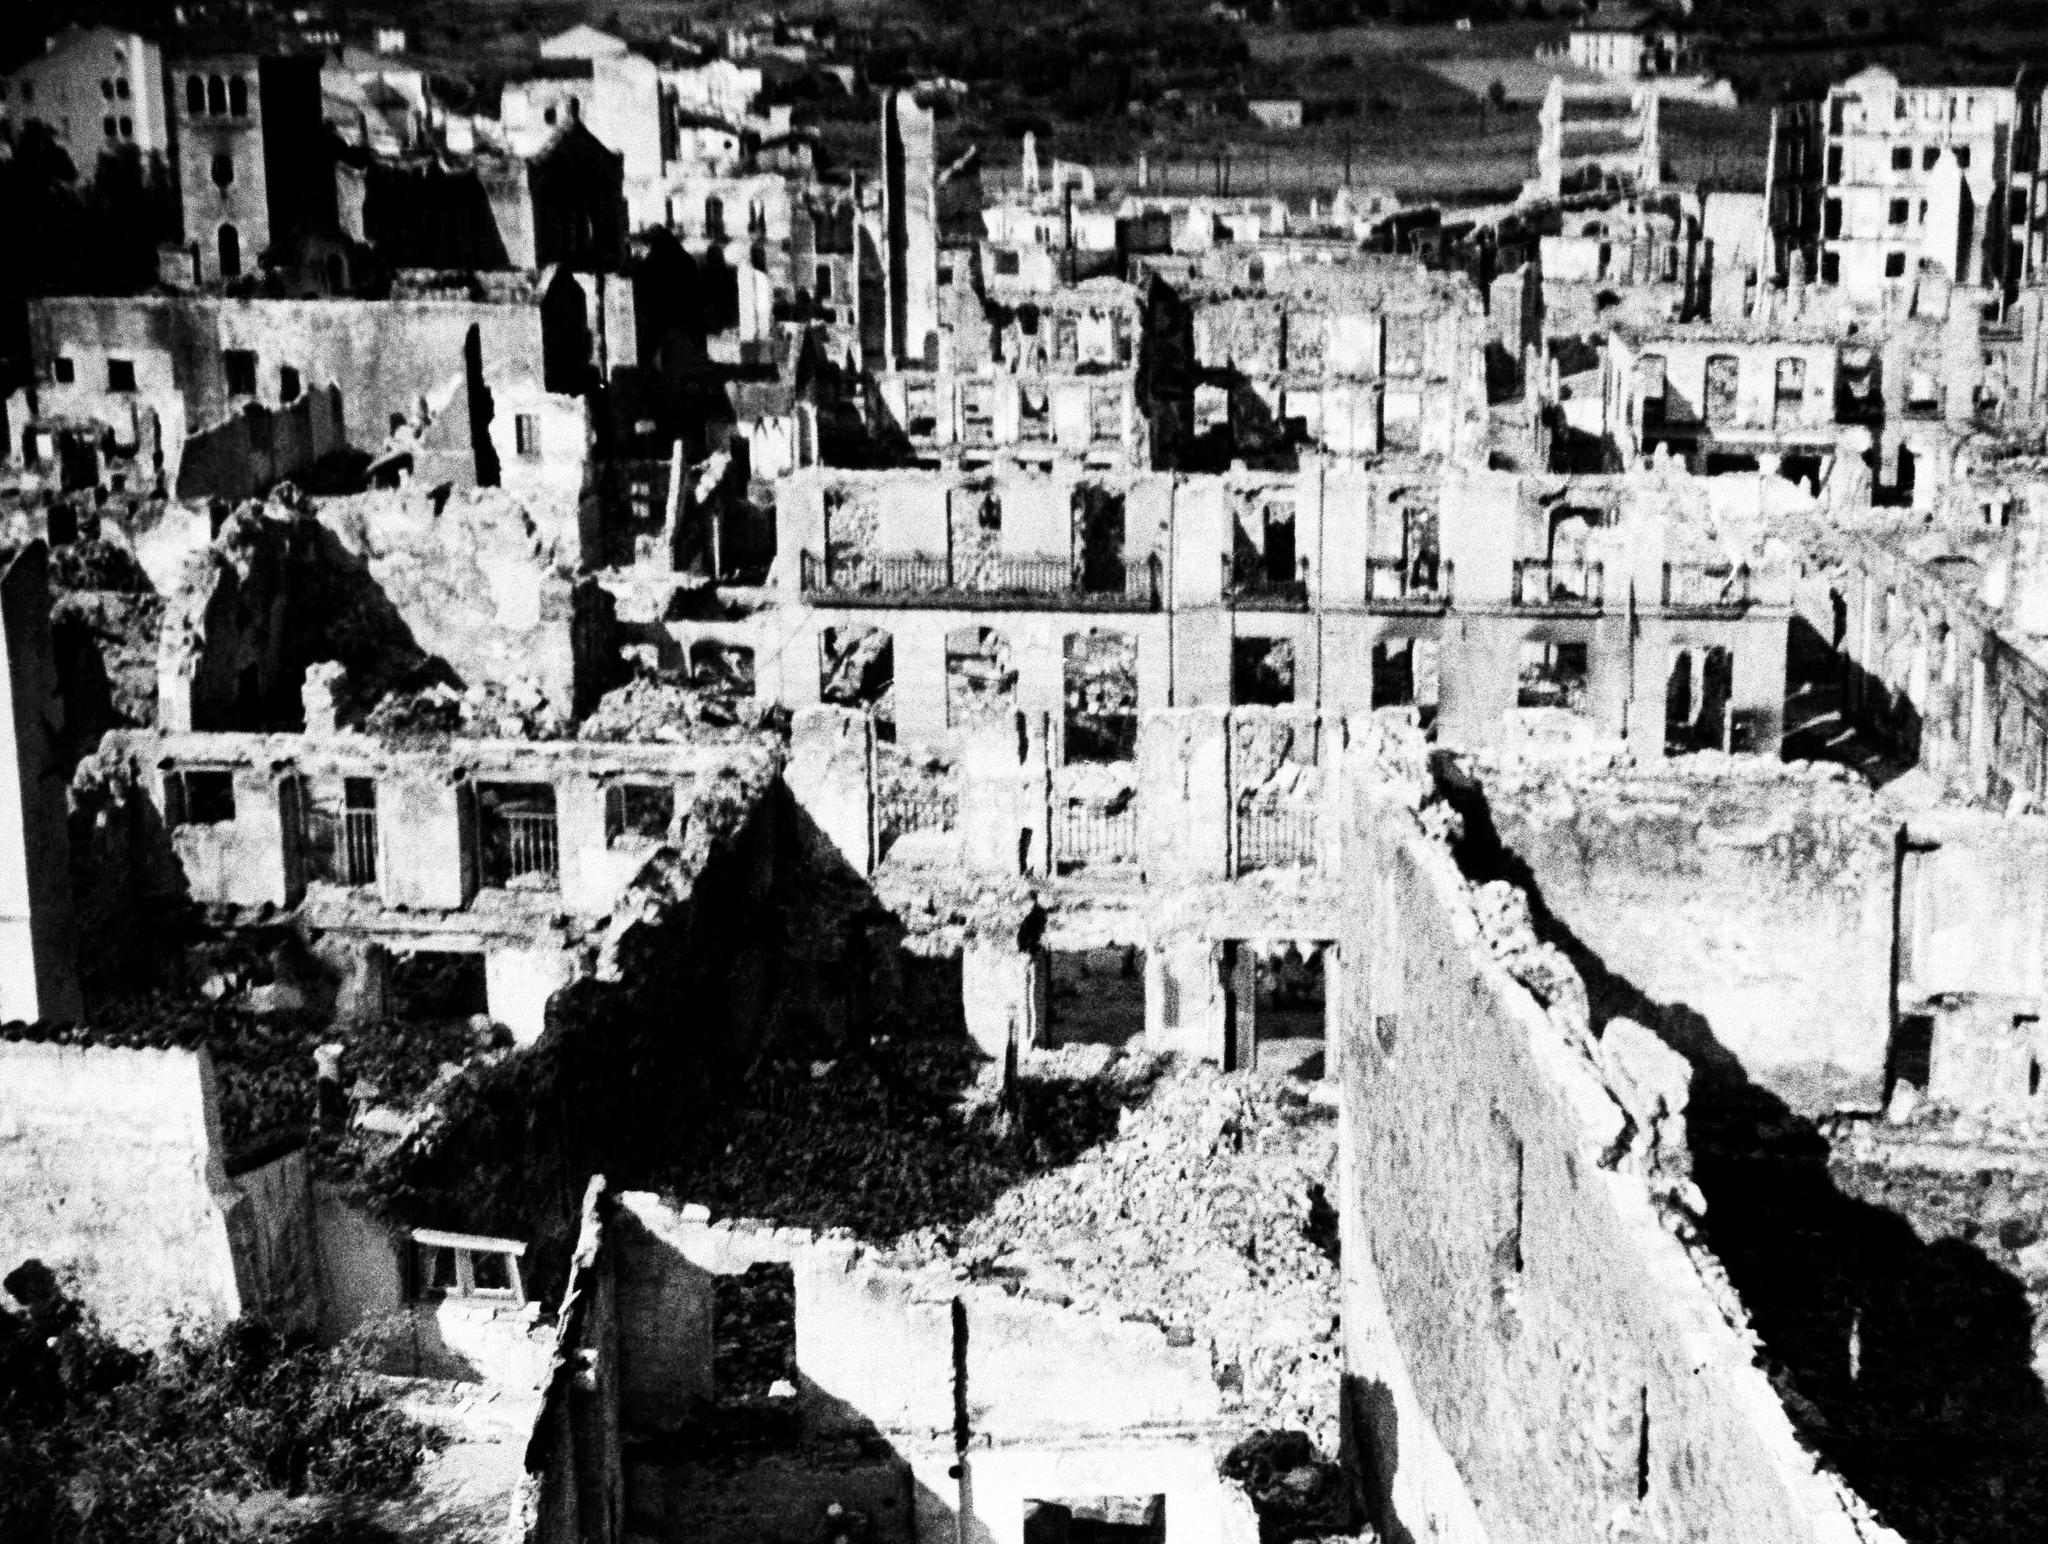 Den baskiske byen Guernica ble nesten totalt ødelagt i mai 1937 av tyske og italienske bombefly i Francos tjeneste. 